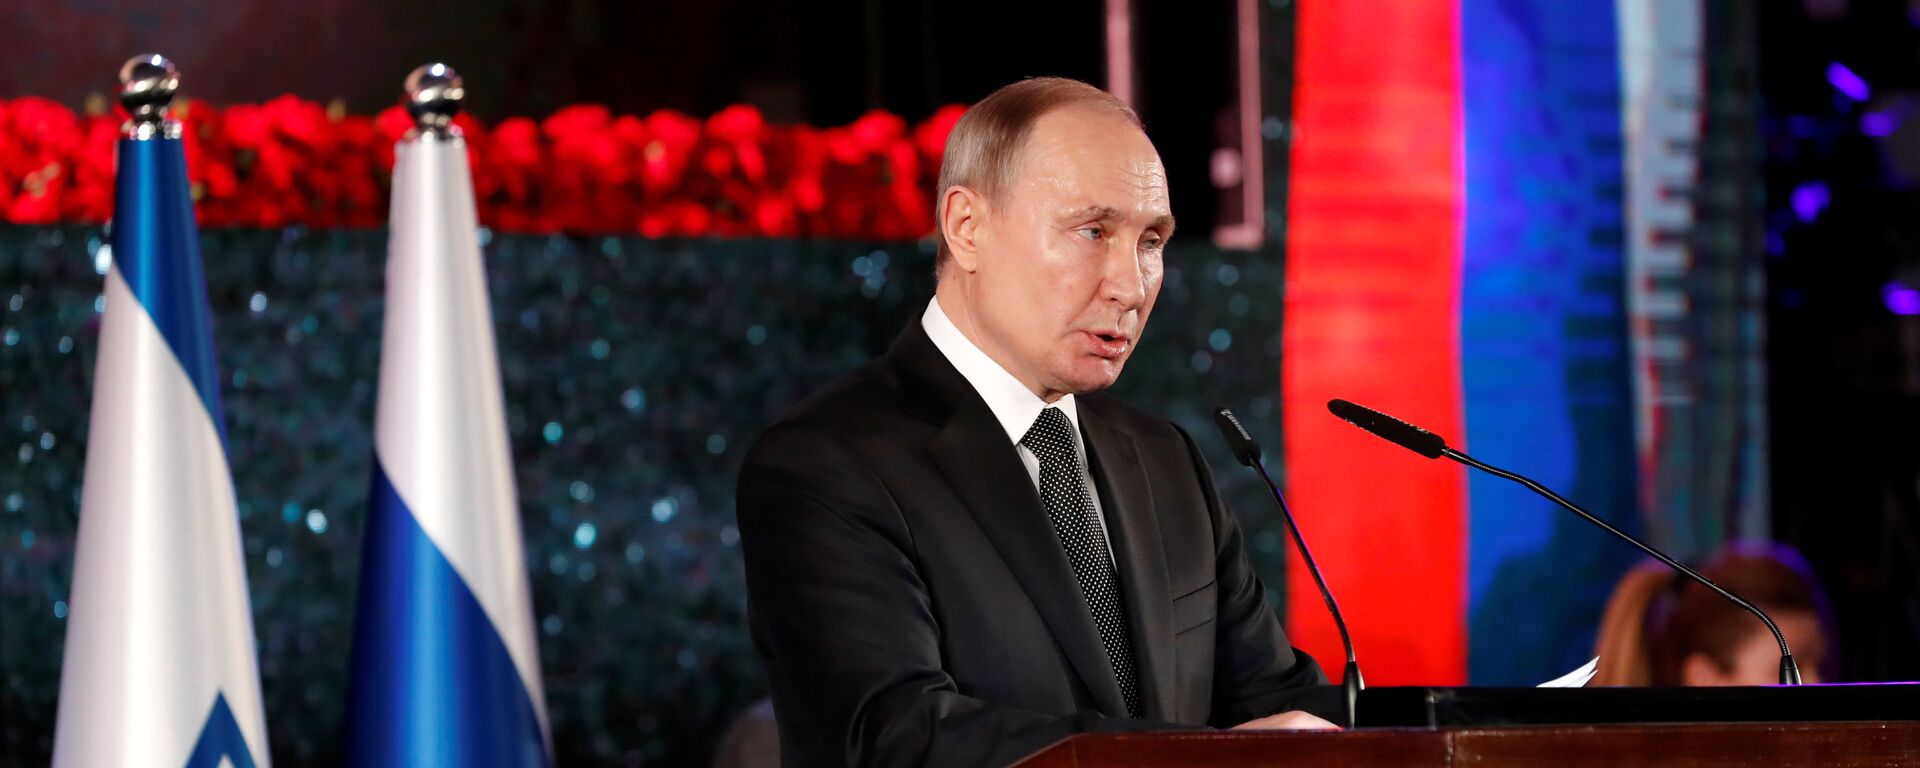 Predsednik Rusije Vladimir Putin govori na ceremoniji otkrivanja spomenika žrtvama opsade Lenjingrada u Jerusalimu - Sputnik Srbija, 1920, 23.01.2020